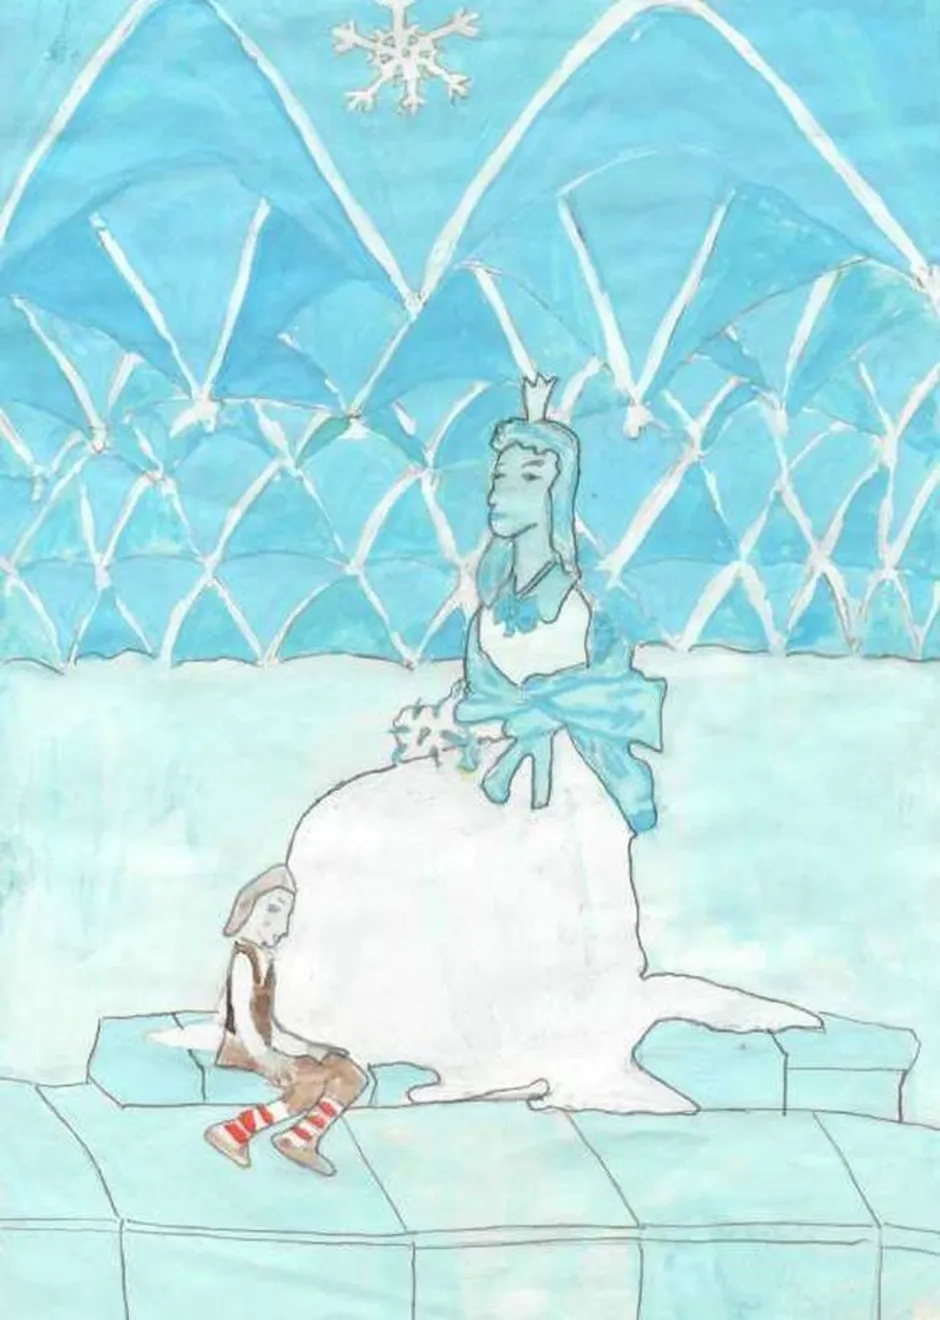 Иллюстрация к снежной королеве 5 класс. Рисунок к сказке Снежная Королева. Нарисовать рисунок к сказке Снежная Королева. Рисунок к сказке Снежная Королева 1 класс. Иллюстрация по сказке Андерсена Снежная Королева 5 класс.